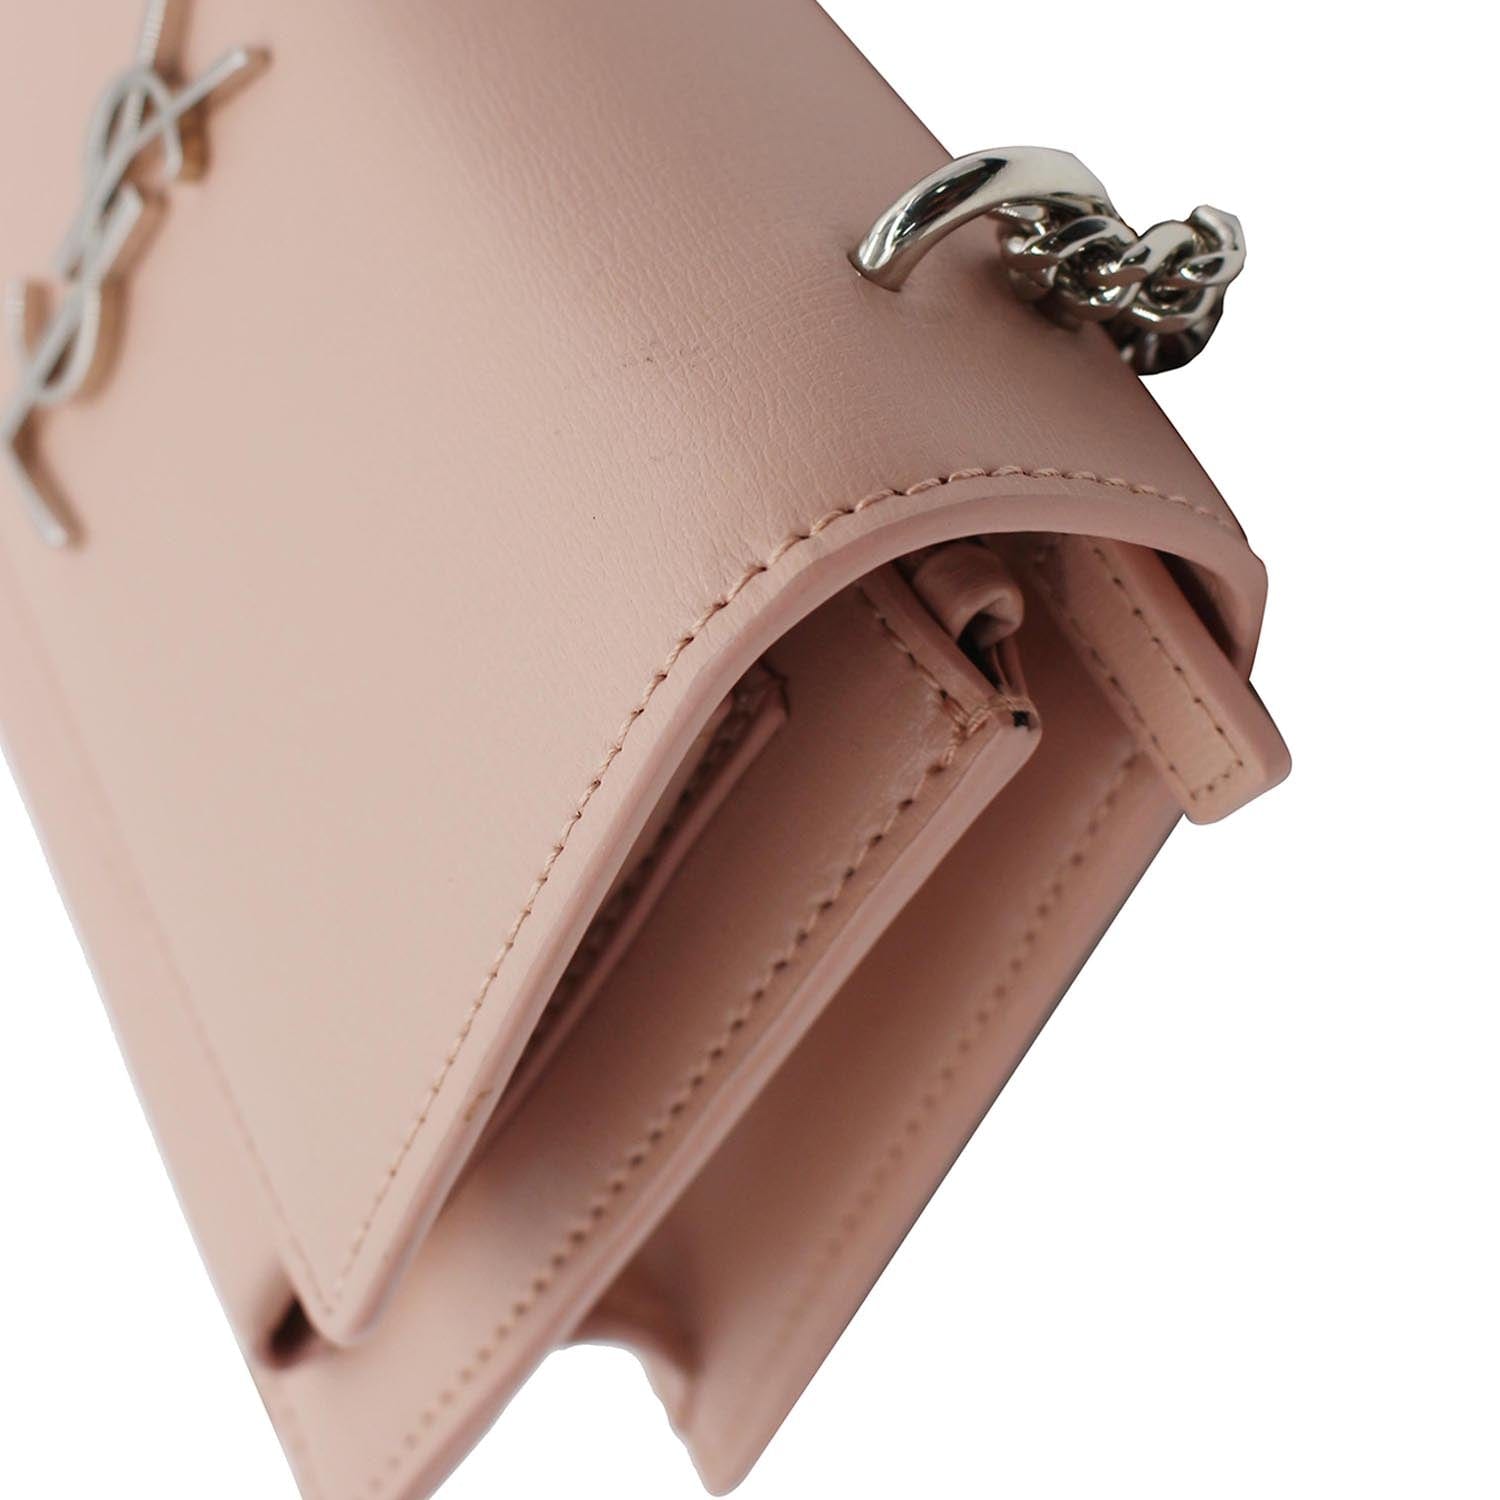 V-ring Medium Leather Shoulder Bag In Light Pink